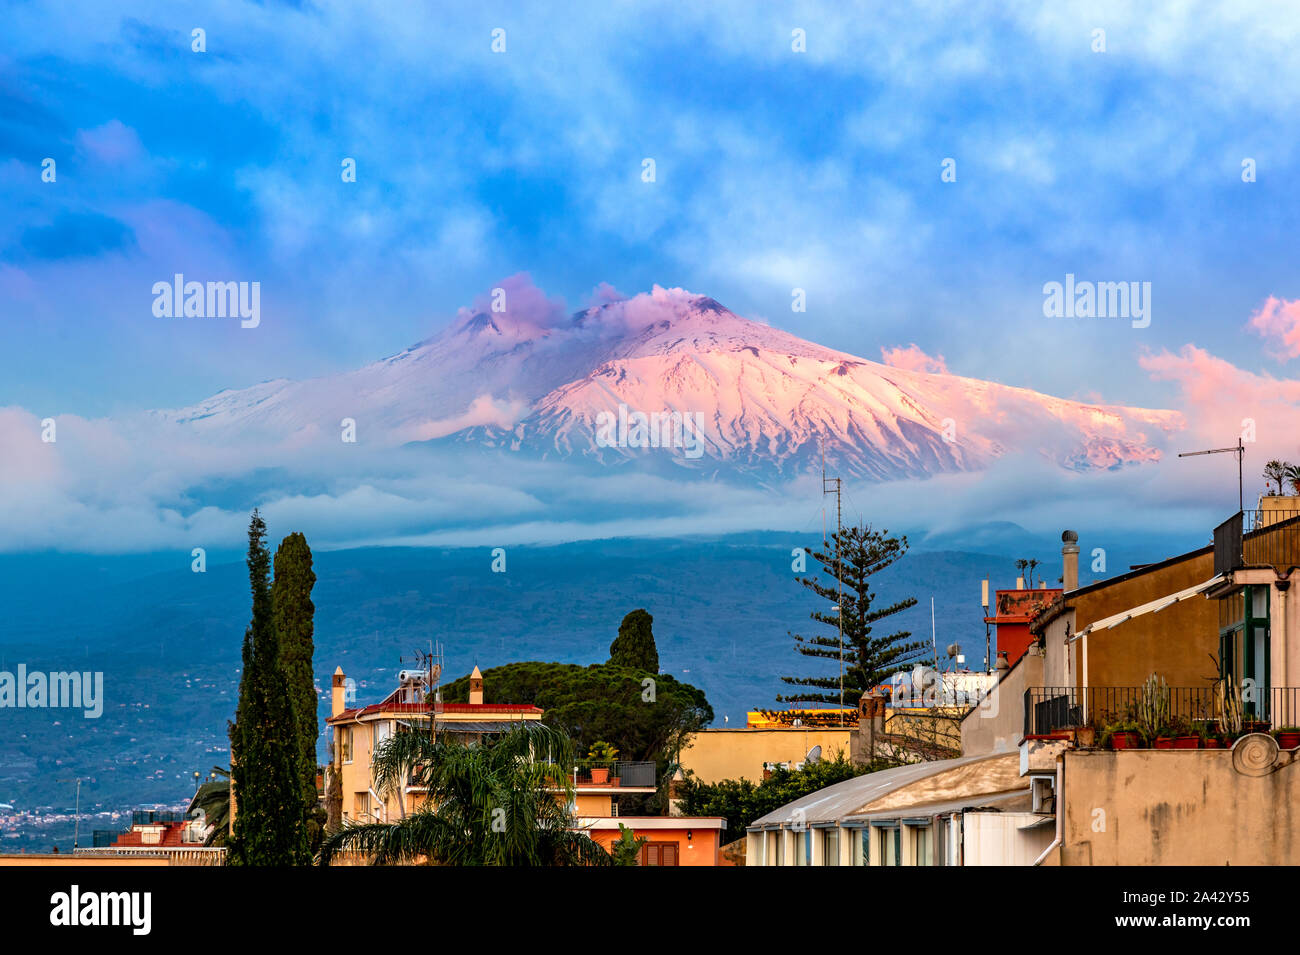 Taormina, Sicile, Italie : vue panoramique sur l'Etna vu sur la ville, dans les feux de l'aube Banque D'Images